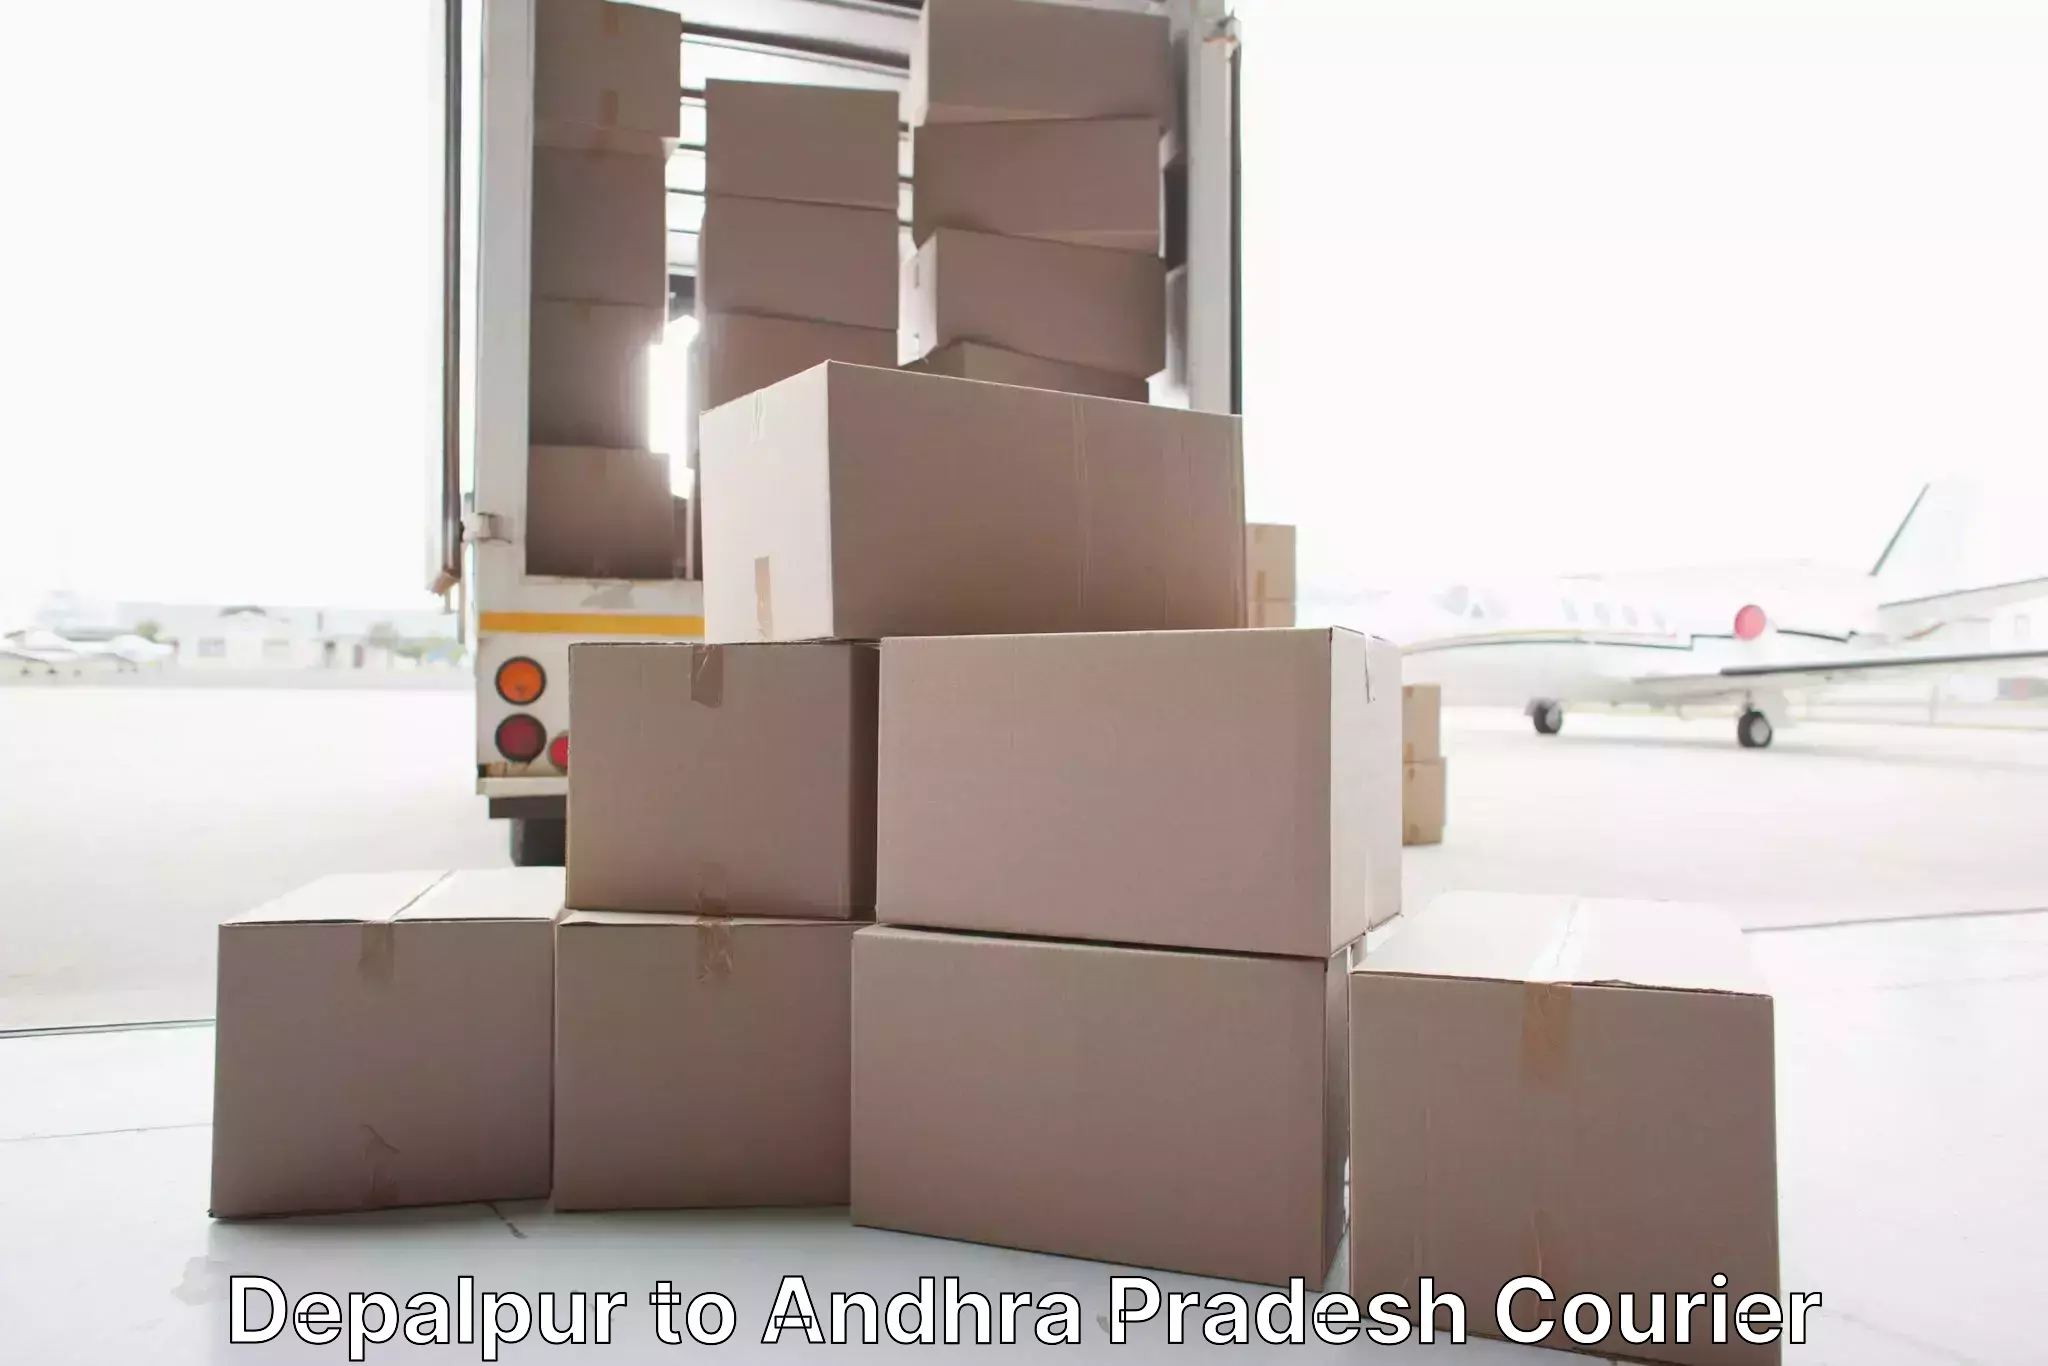 Furniture moving experts Depalpur to Andhra Pradesh